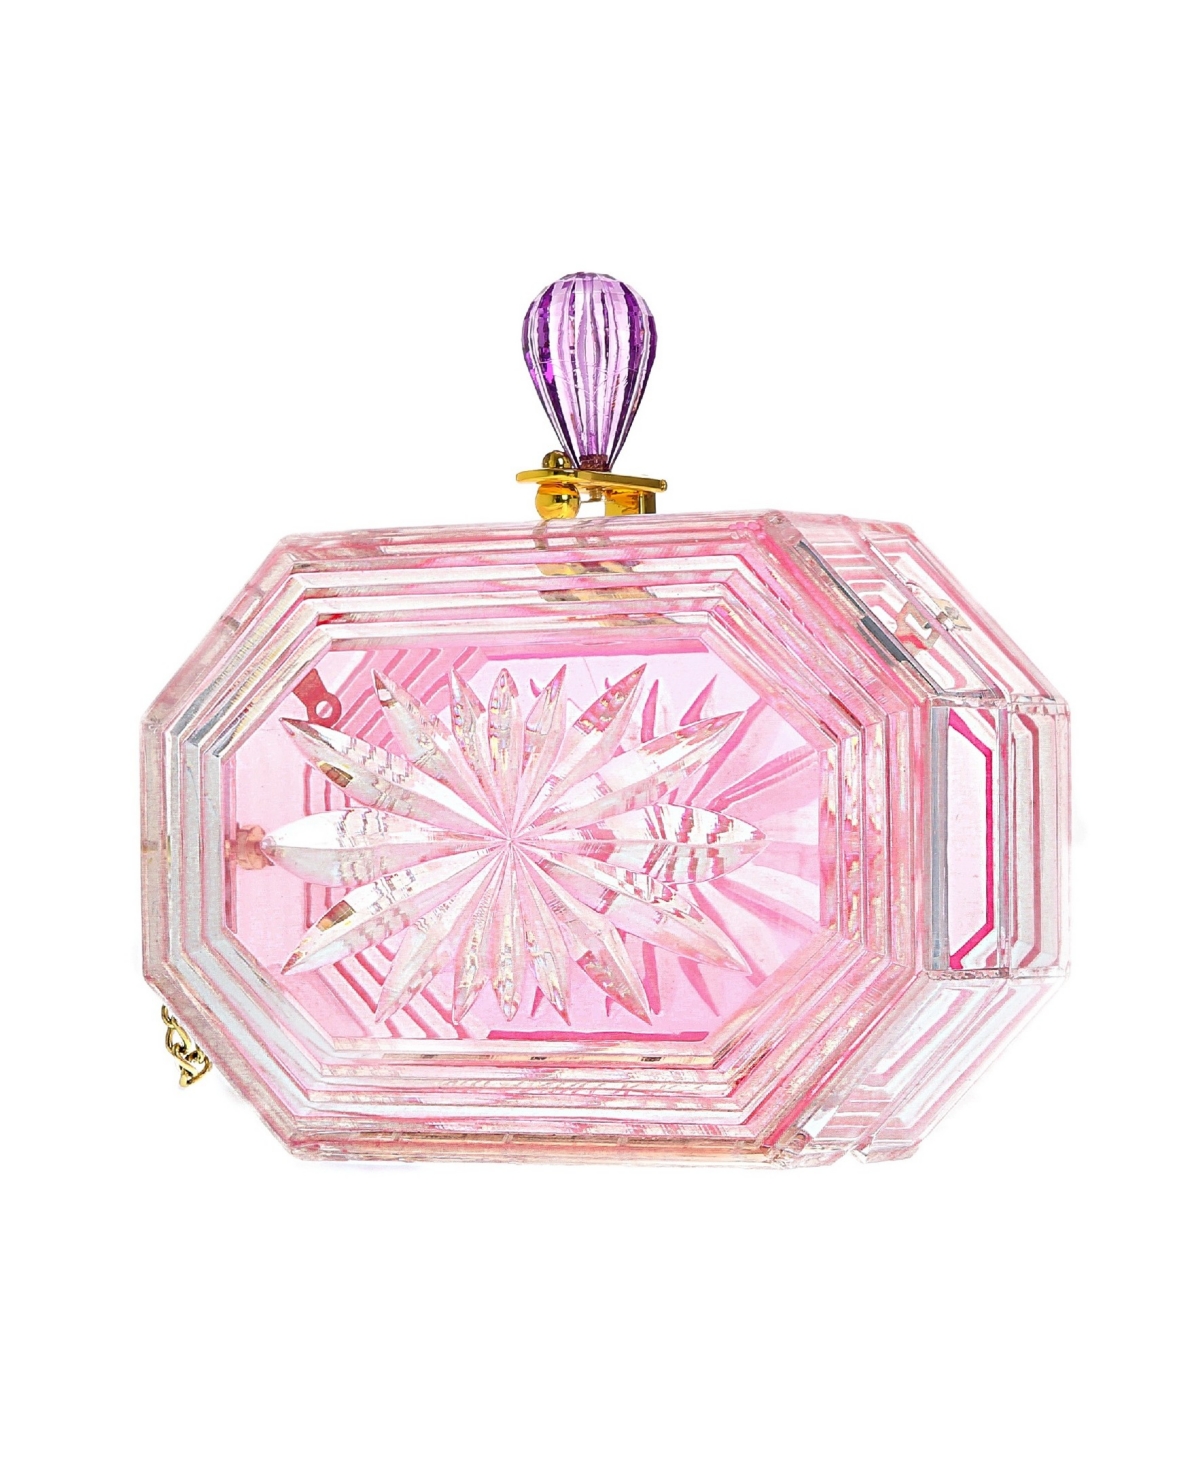 Milanblocks Women's Perfume Bottle Clear Flower Cut Acrylic Clutch In Pink